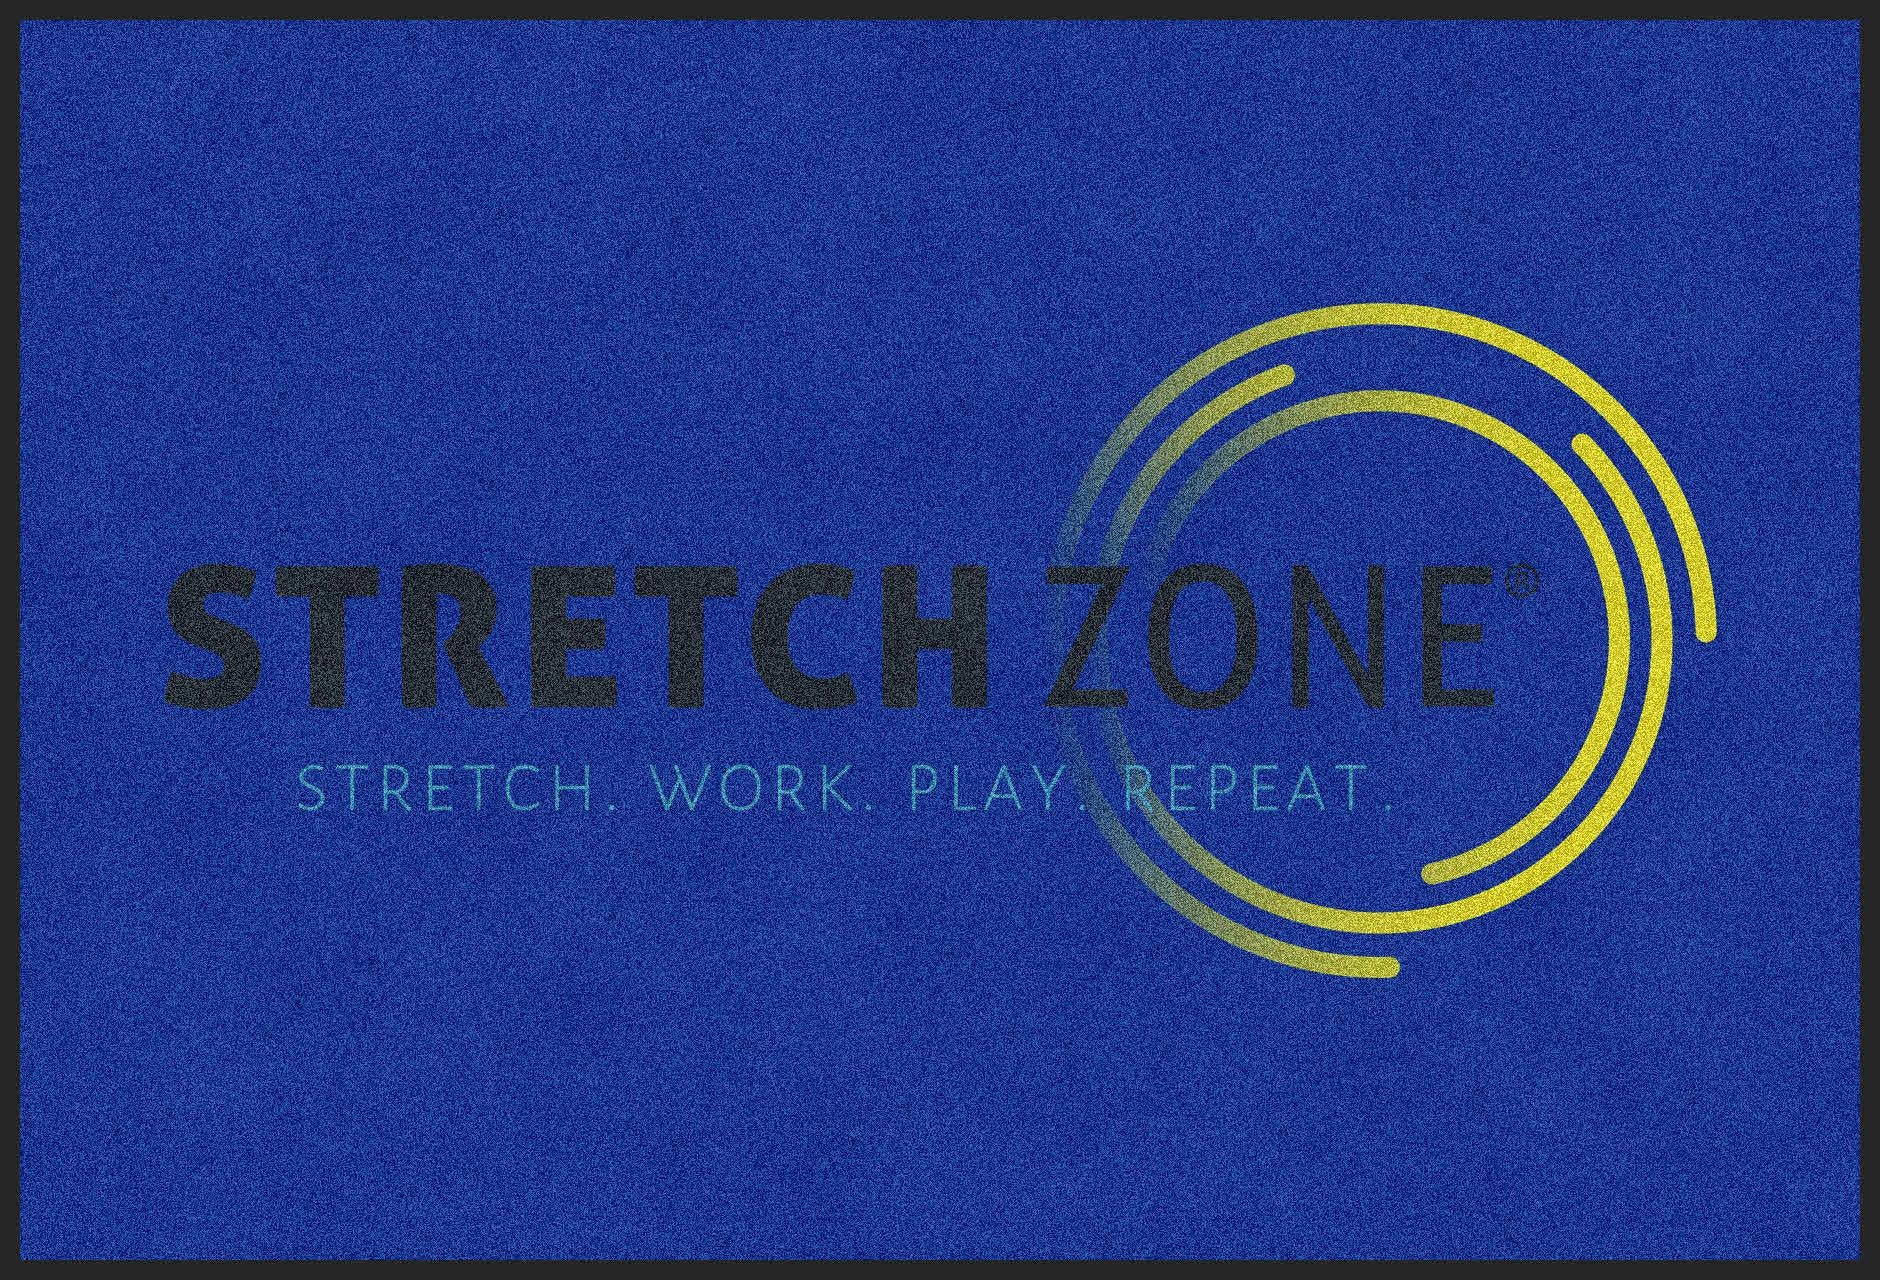 stretchzone